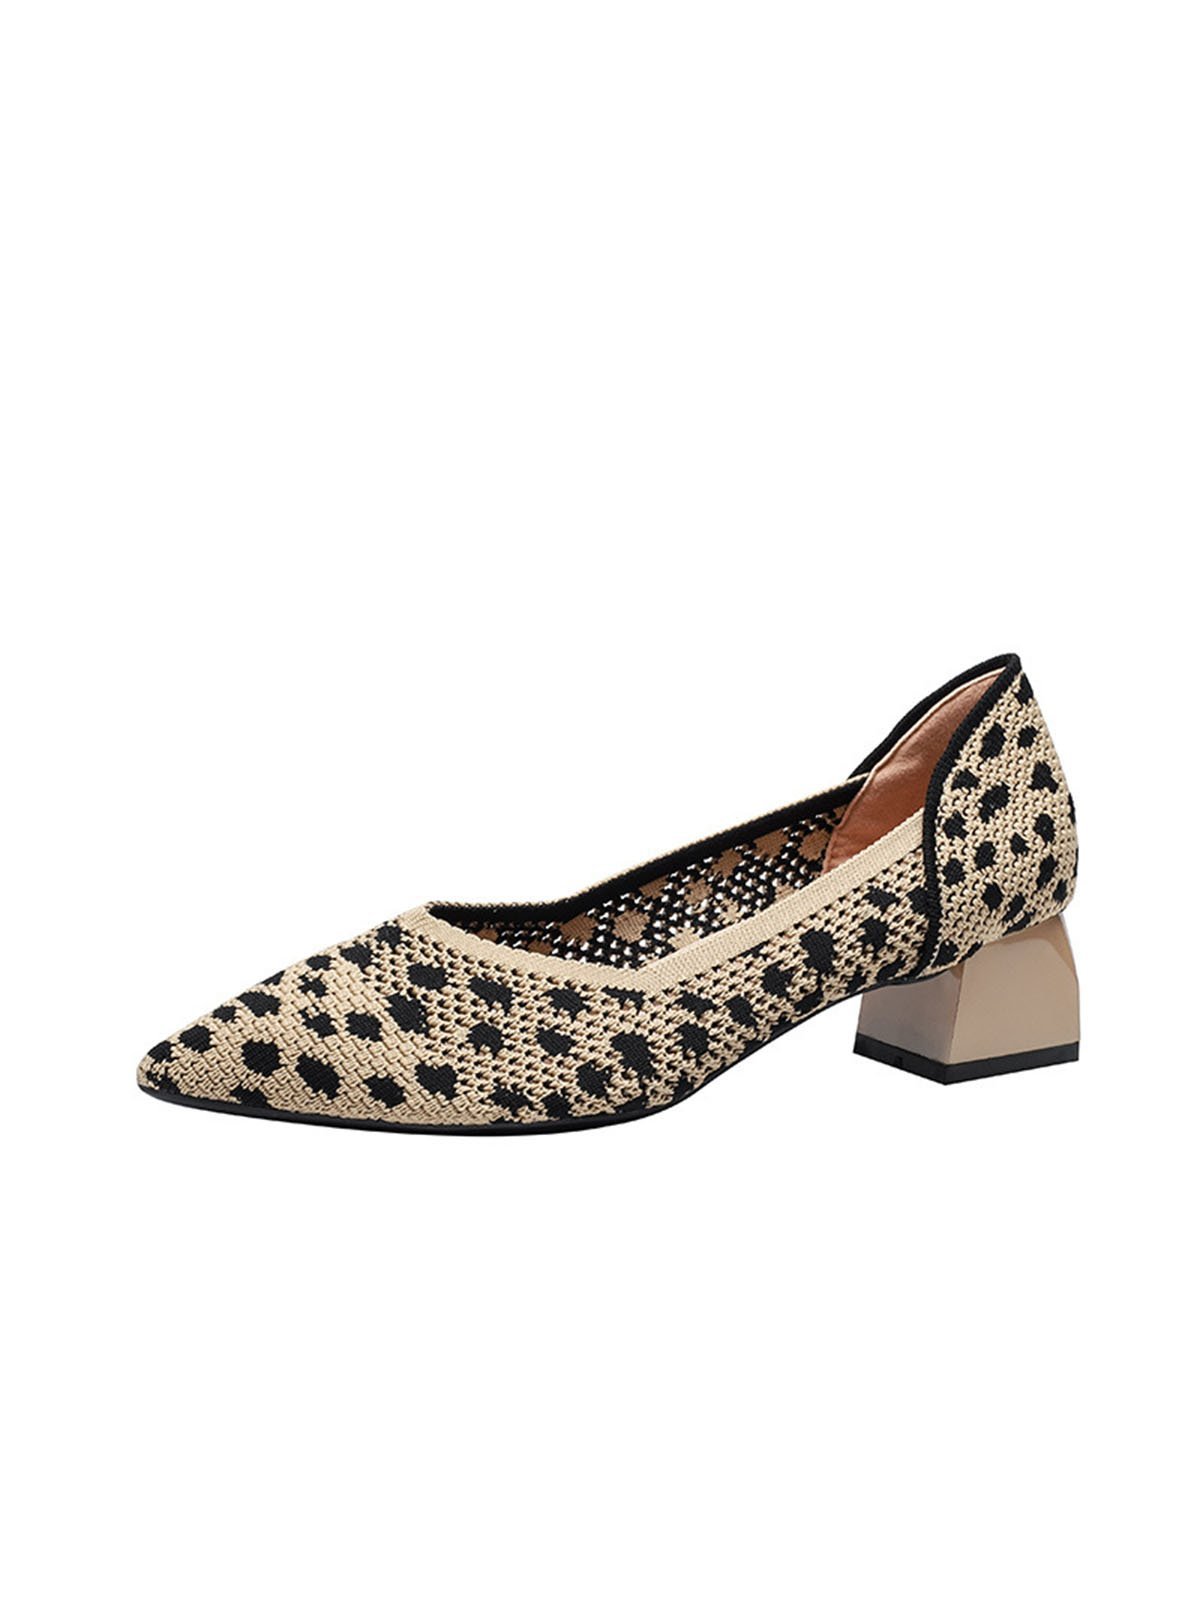 Kontrast Unifarben Farbe Leopard Print Hohe Elastizität und Bequem Fliegend Gewebe Chunky Absatz Spitz Schuhe